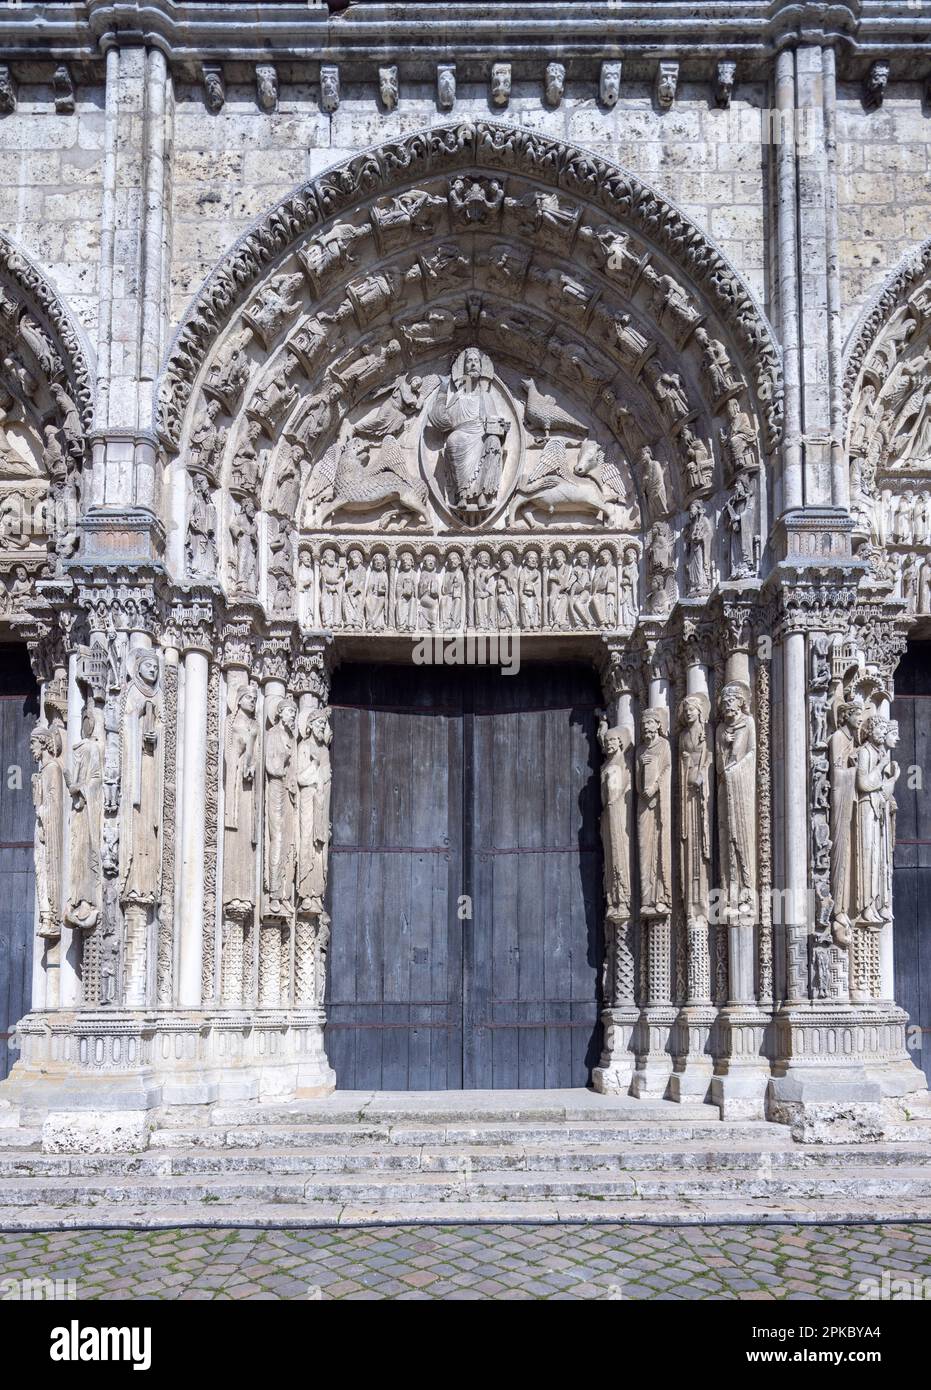 Portail central de l'entrée ouest, cathédrale de Chartres, France Banque D'Images